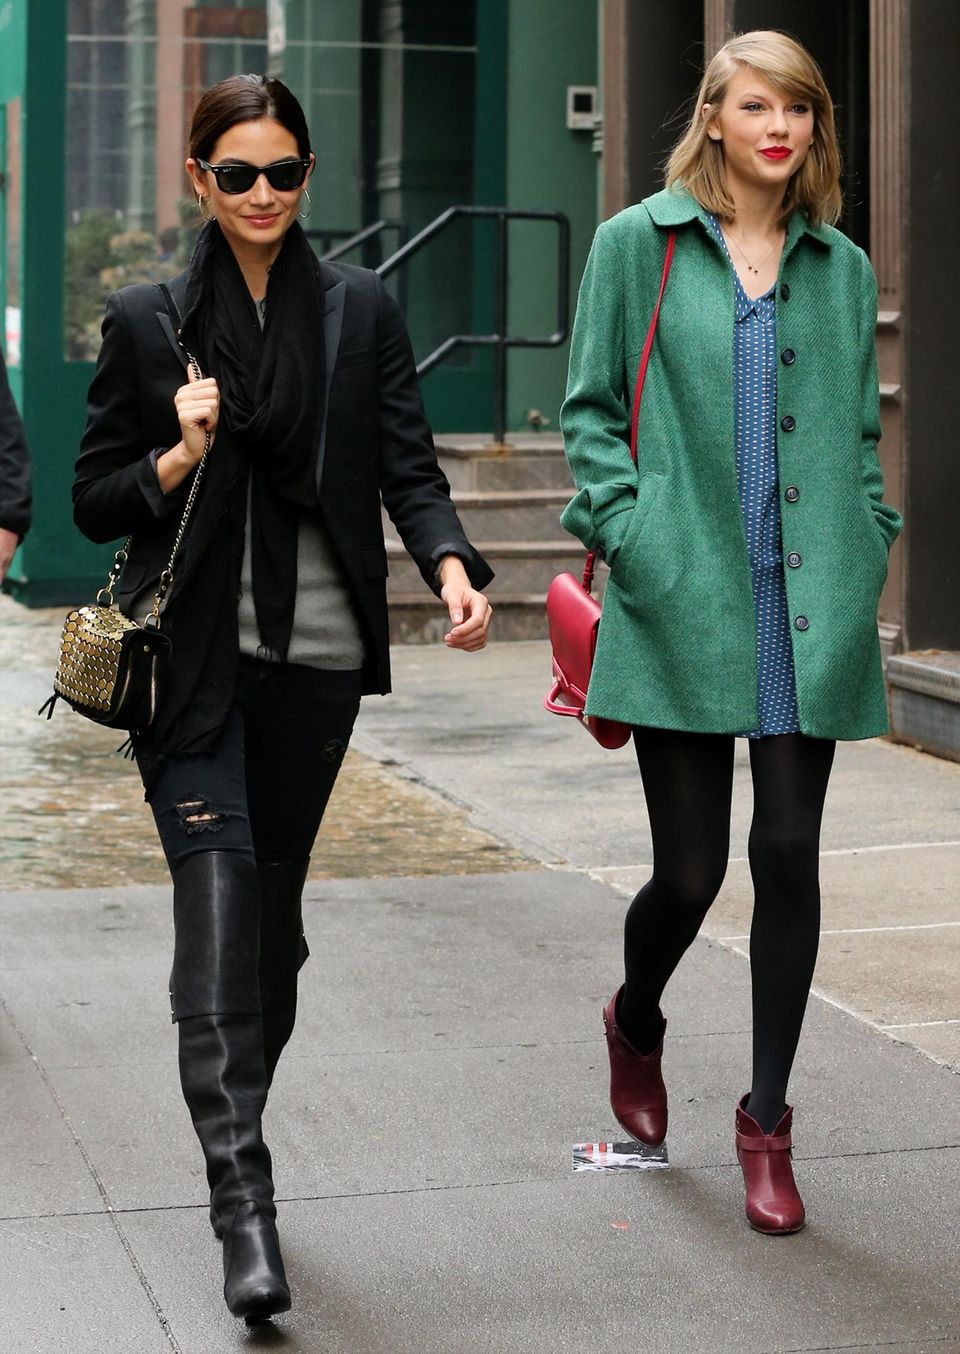 Taylor Swift und Lily Aldridge verbringen gern Zeit zusammen wie hier beim gemeinsamen Bummel durch New York. Die 24-jährige Musikerin und das 28-jährige Model freundeten sich im November 2013 an, als sie gemeinsam während einer "Victoria's Secret Fashion Show" auf der Bühne standen. Seitdem sagt Lily Aldridge, dass die Sängerin eine ihrer besten Freundinnen sei.